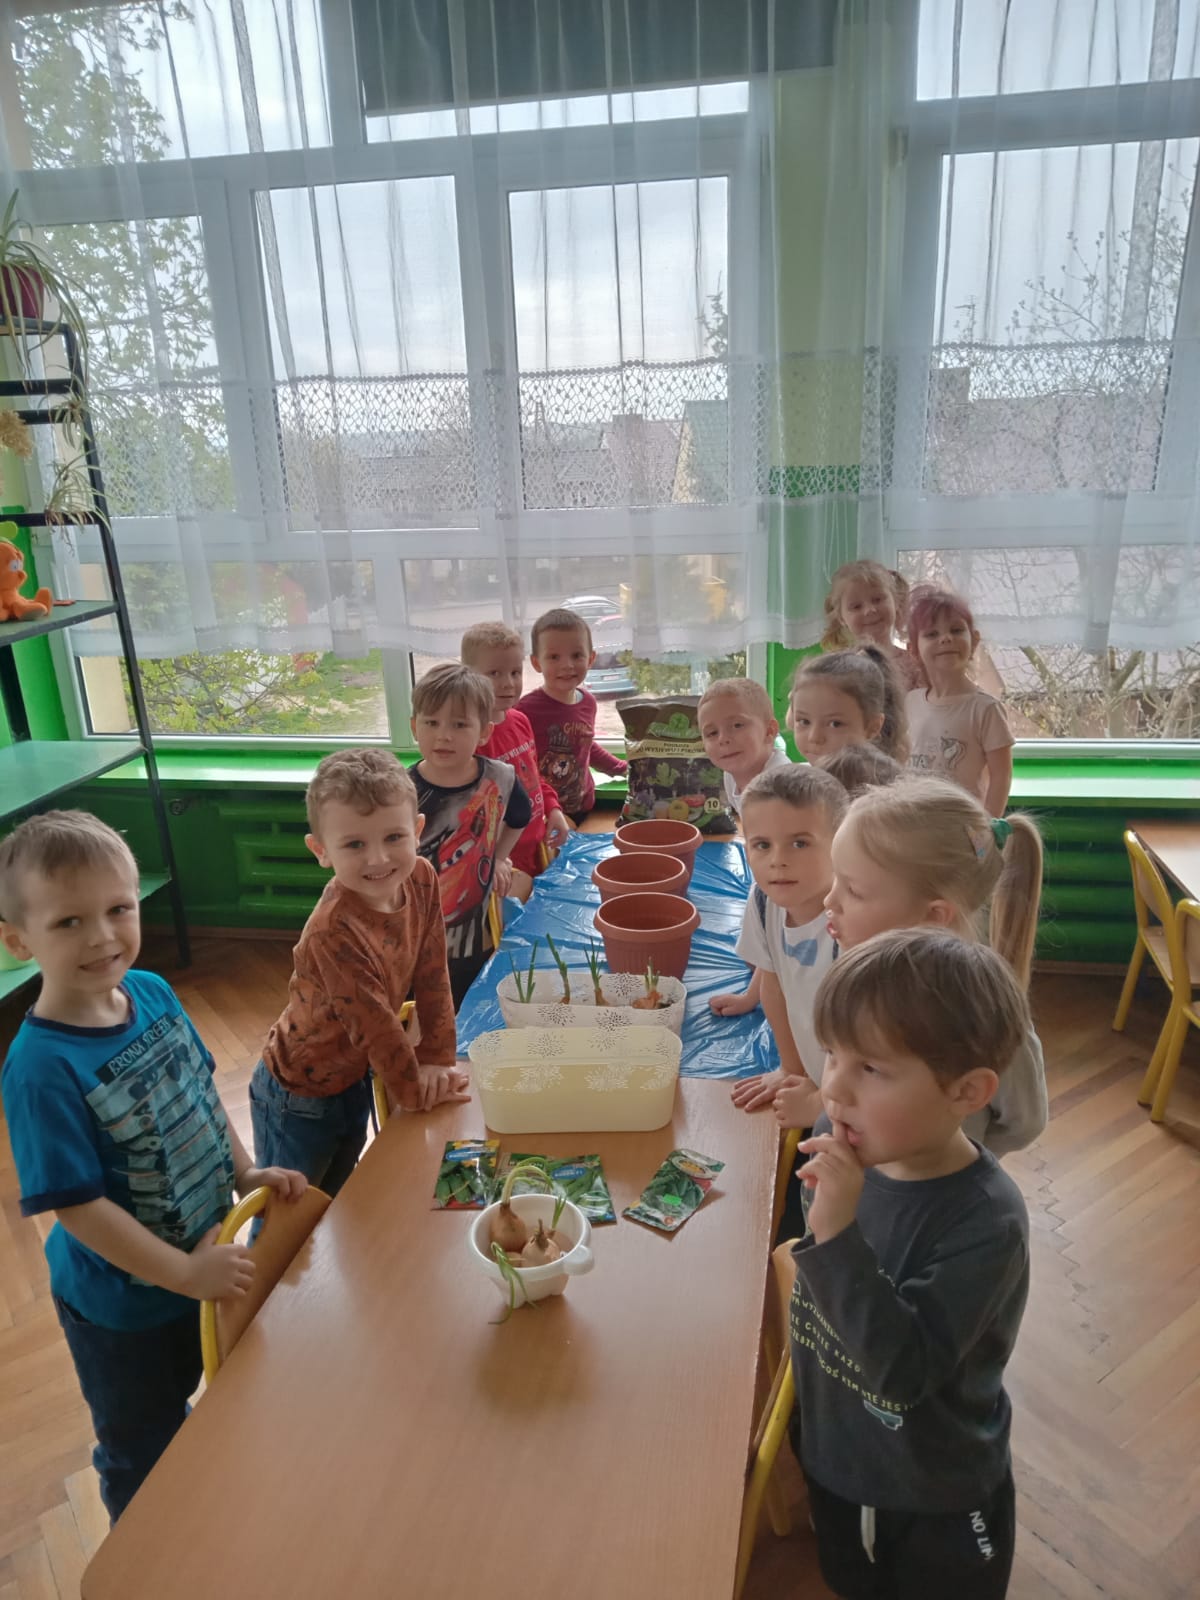 Grupa dzieci przy stolikach przygotowuje się do sadzenia nasion w doniczkach z ziemią